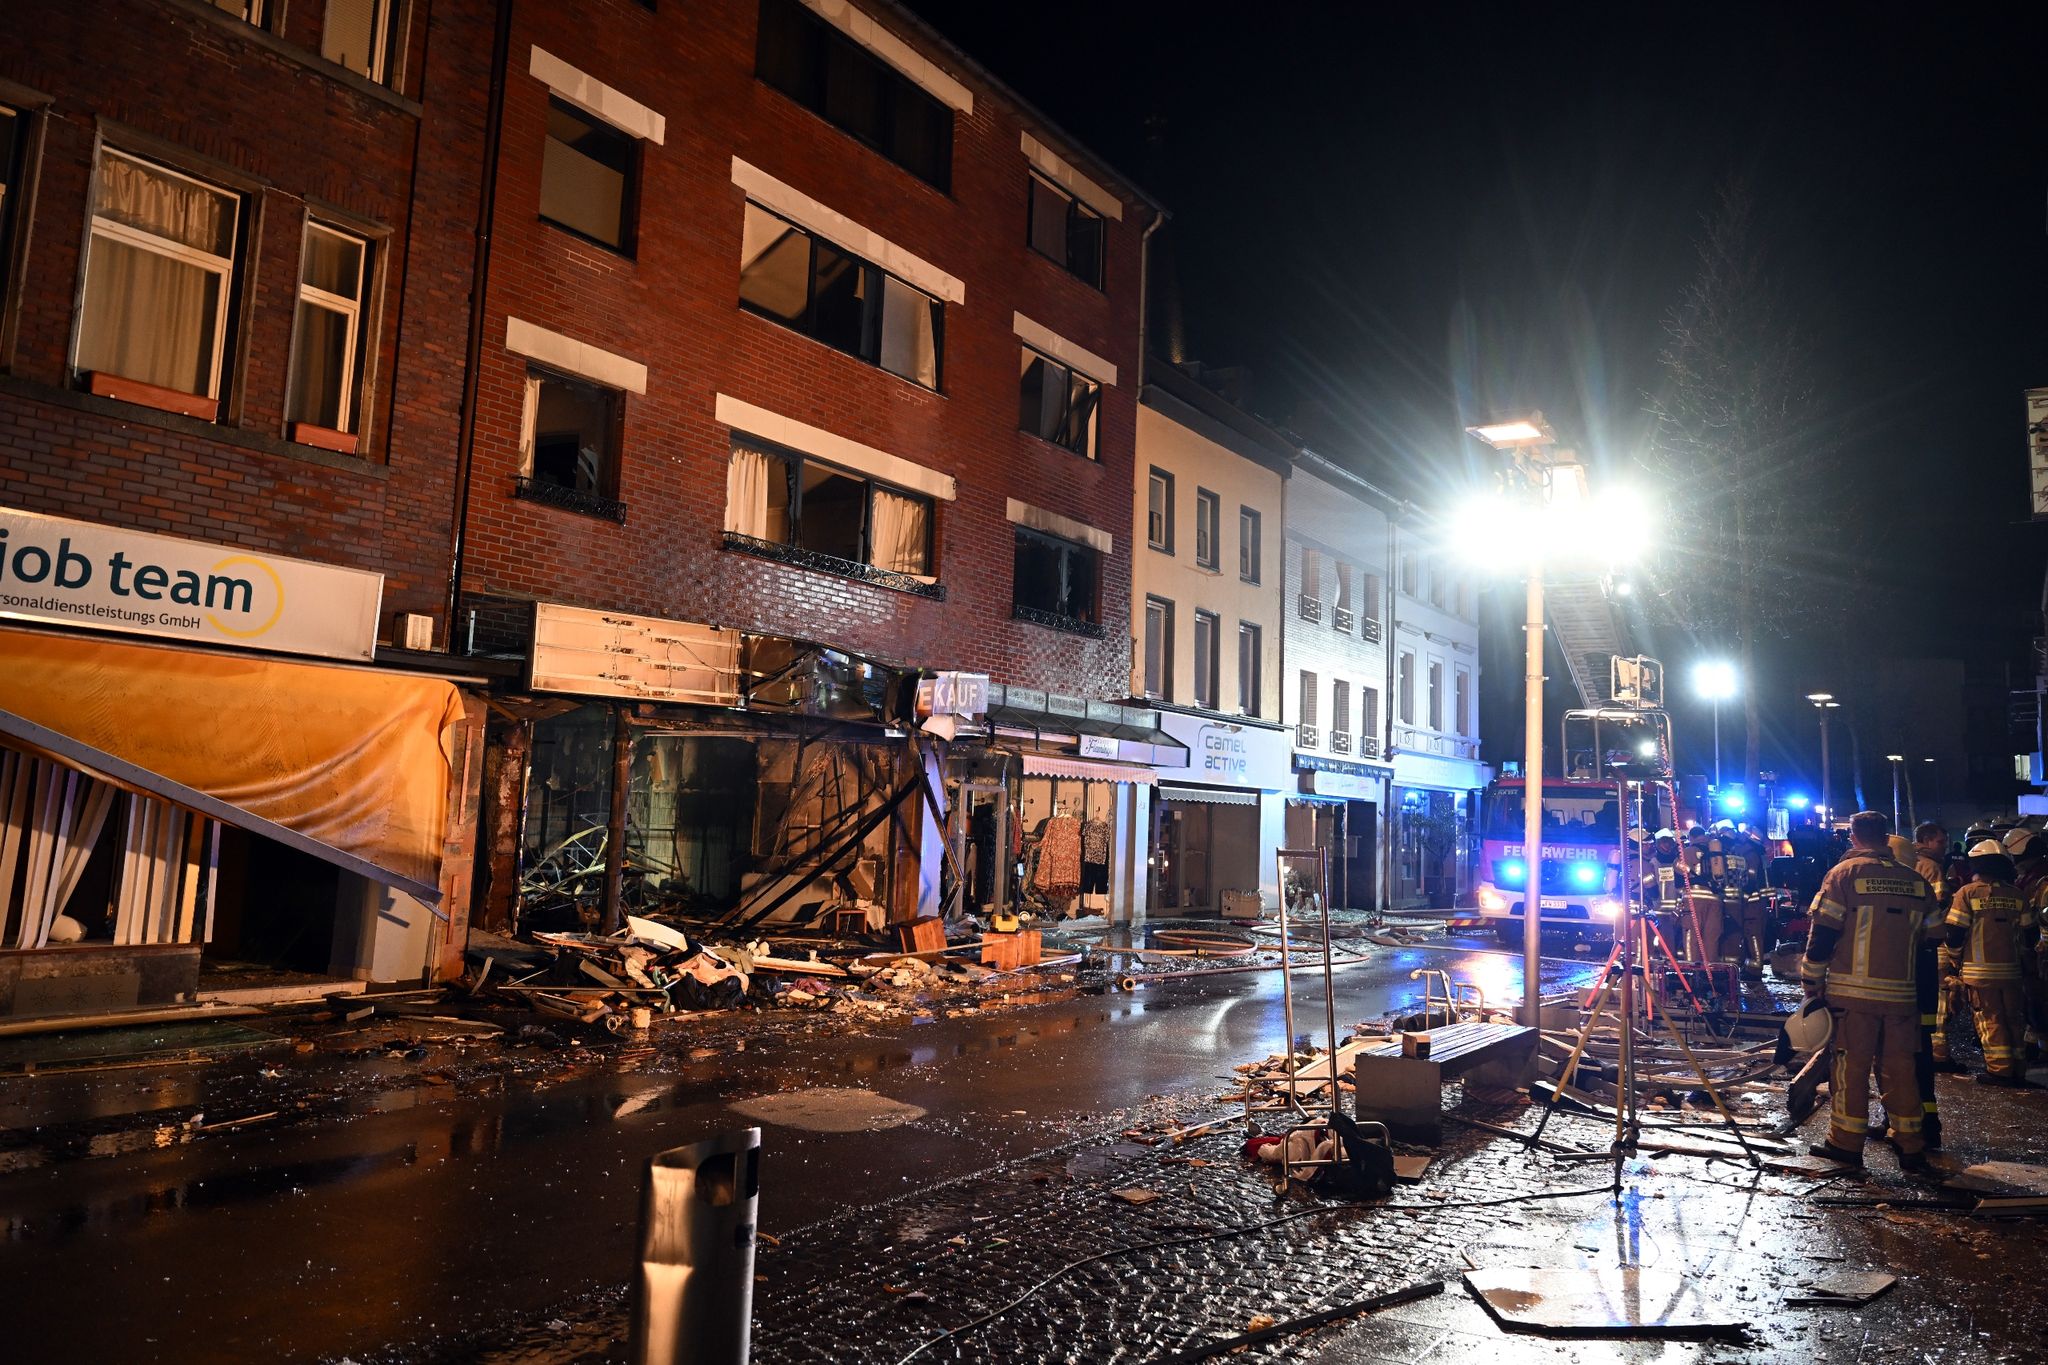 NRW: Viele Opfer durch Explosion in Wohnhaus